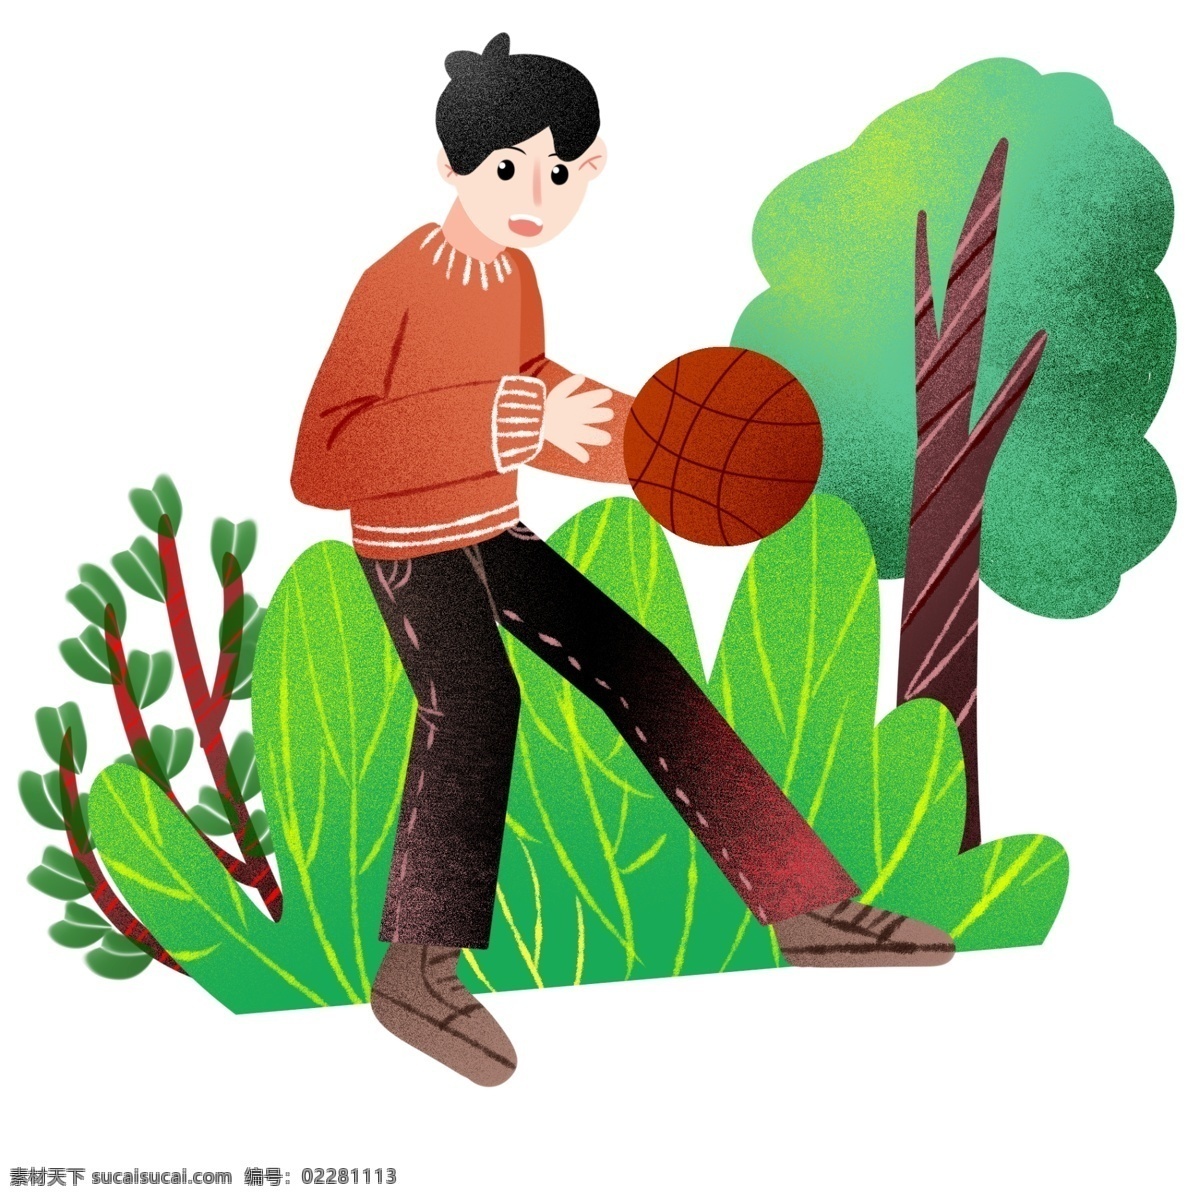 健身 运动 篮球 圆圆的篮球 健身运动 卡通插画 体育运动 活动筋骨 加强锻炼 篮球的小伙